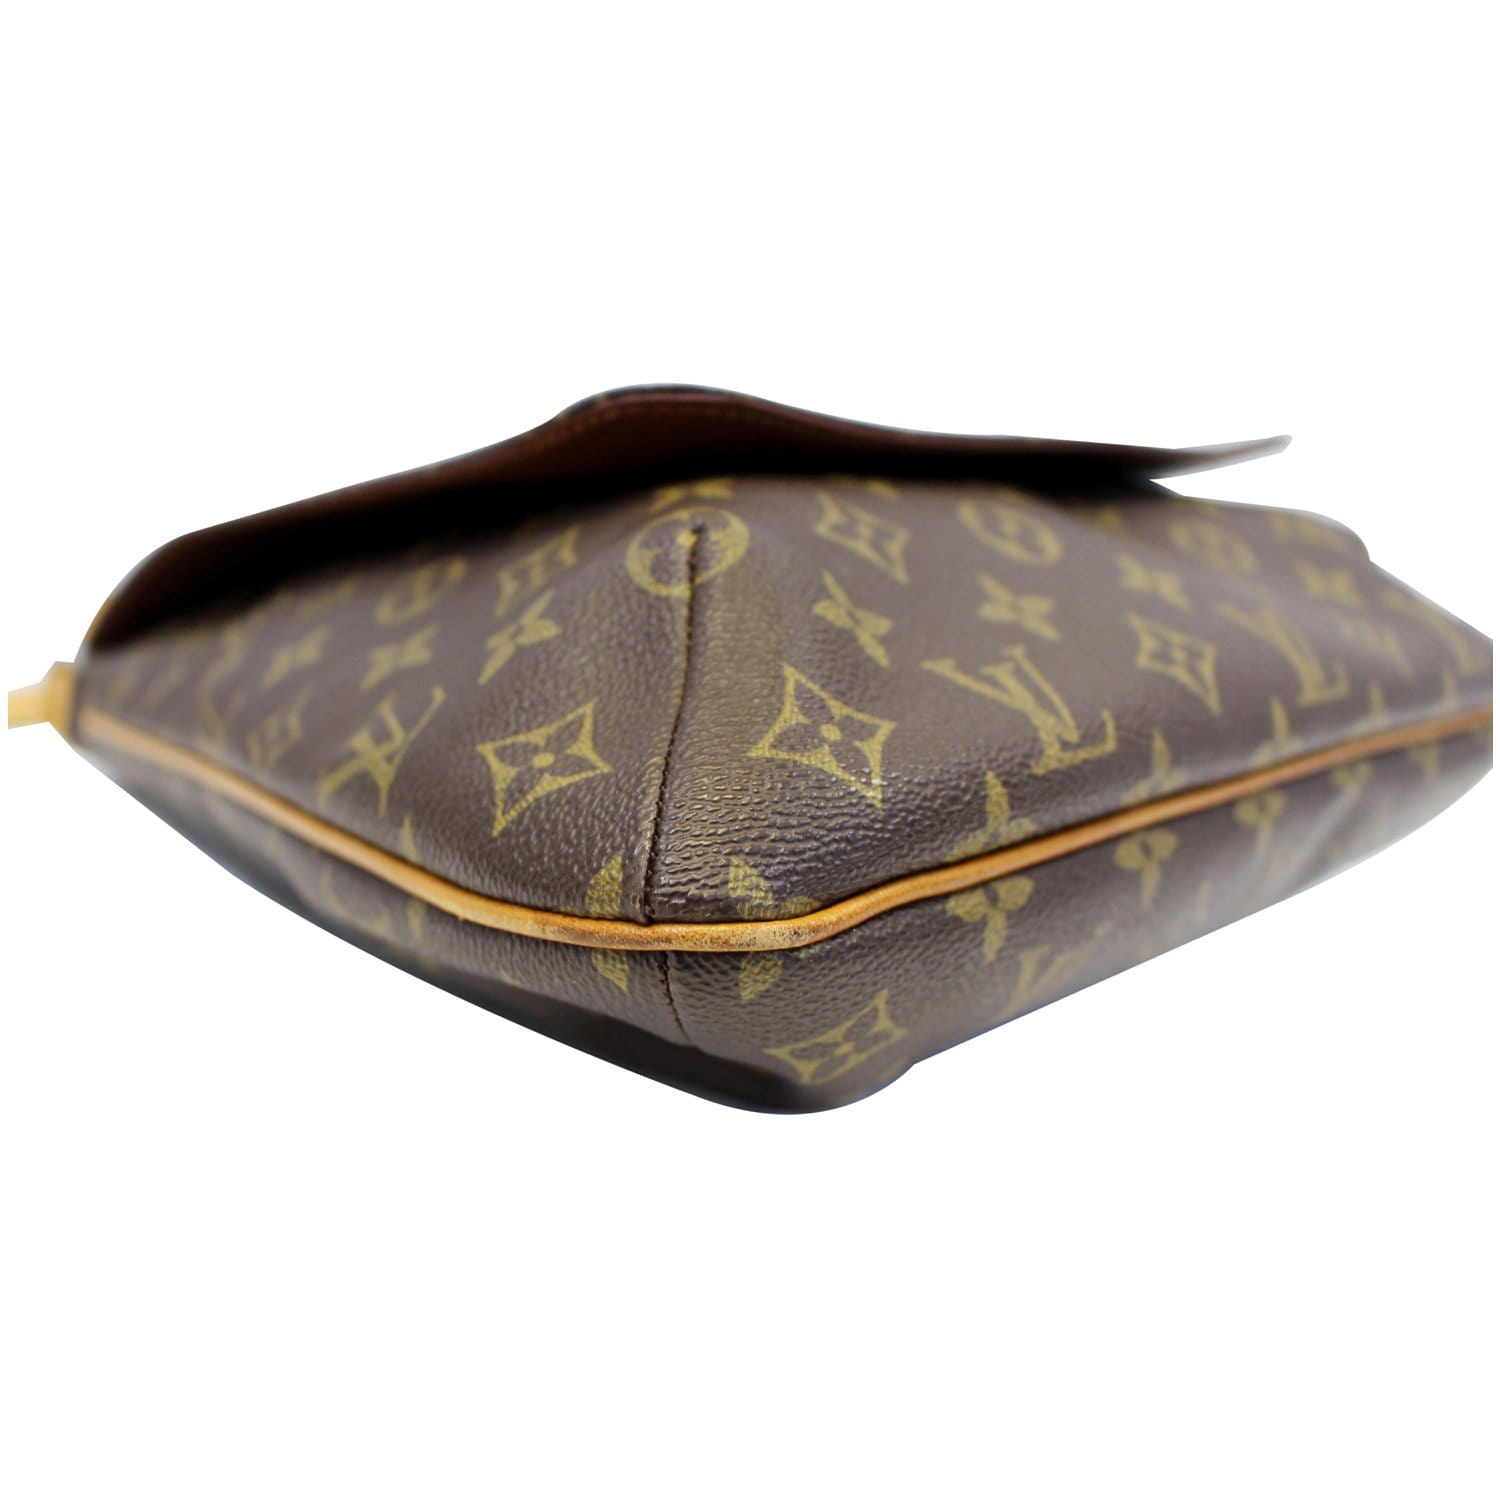 Authentic Louis Vuitton Musette Salsa GM Monogram Shoulder Bag Brown #16409